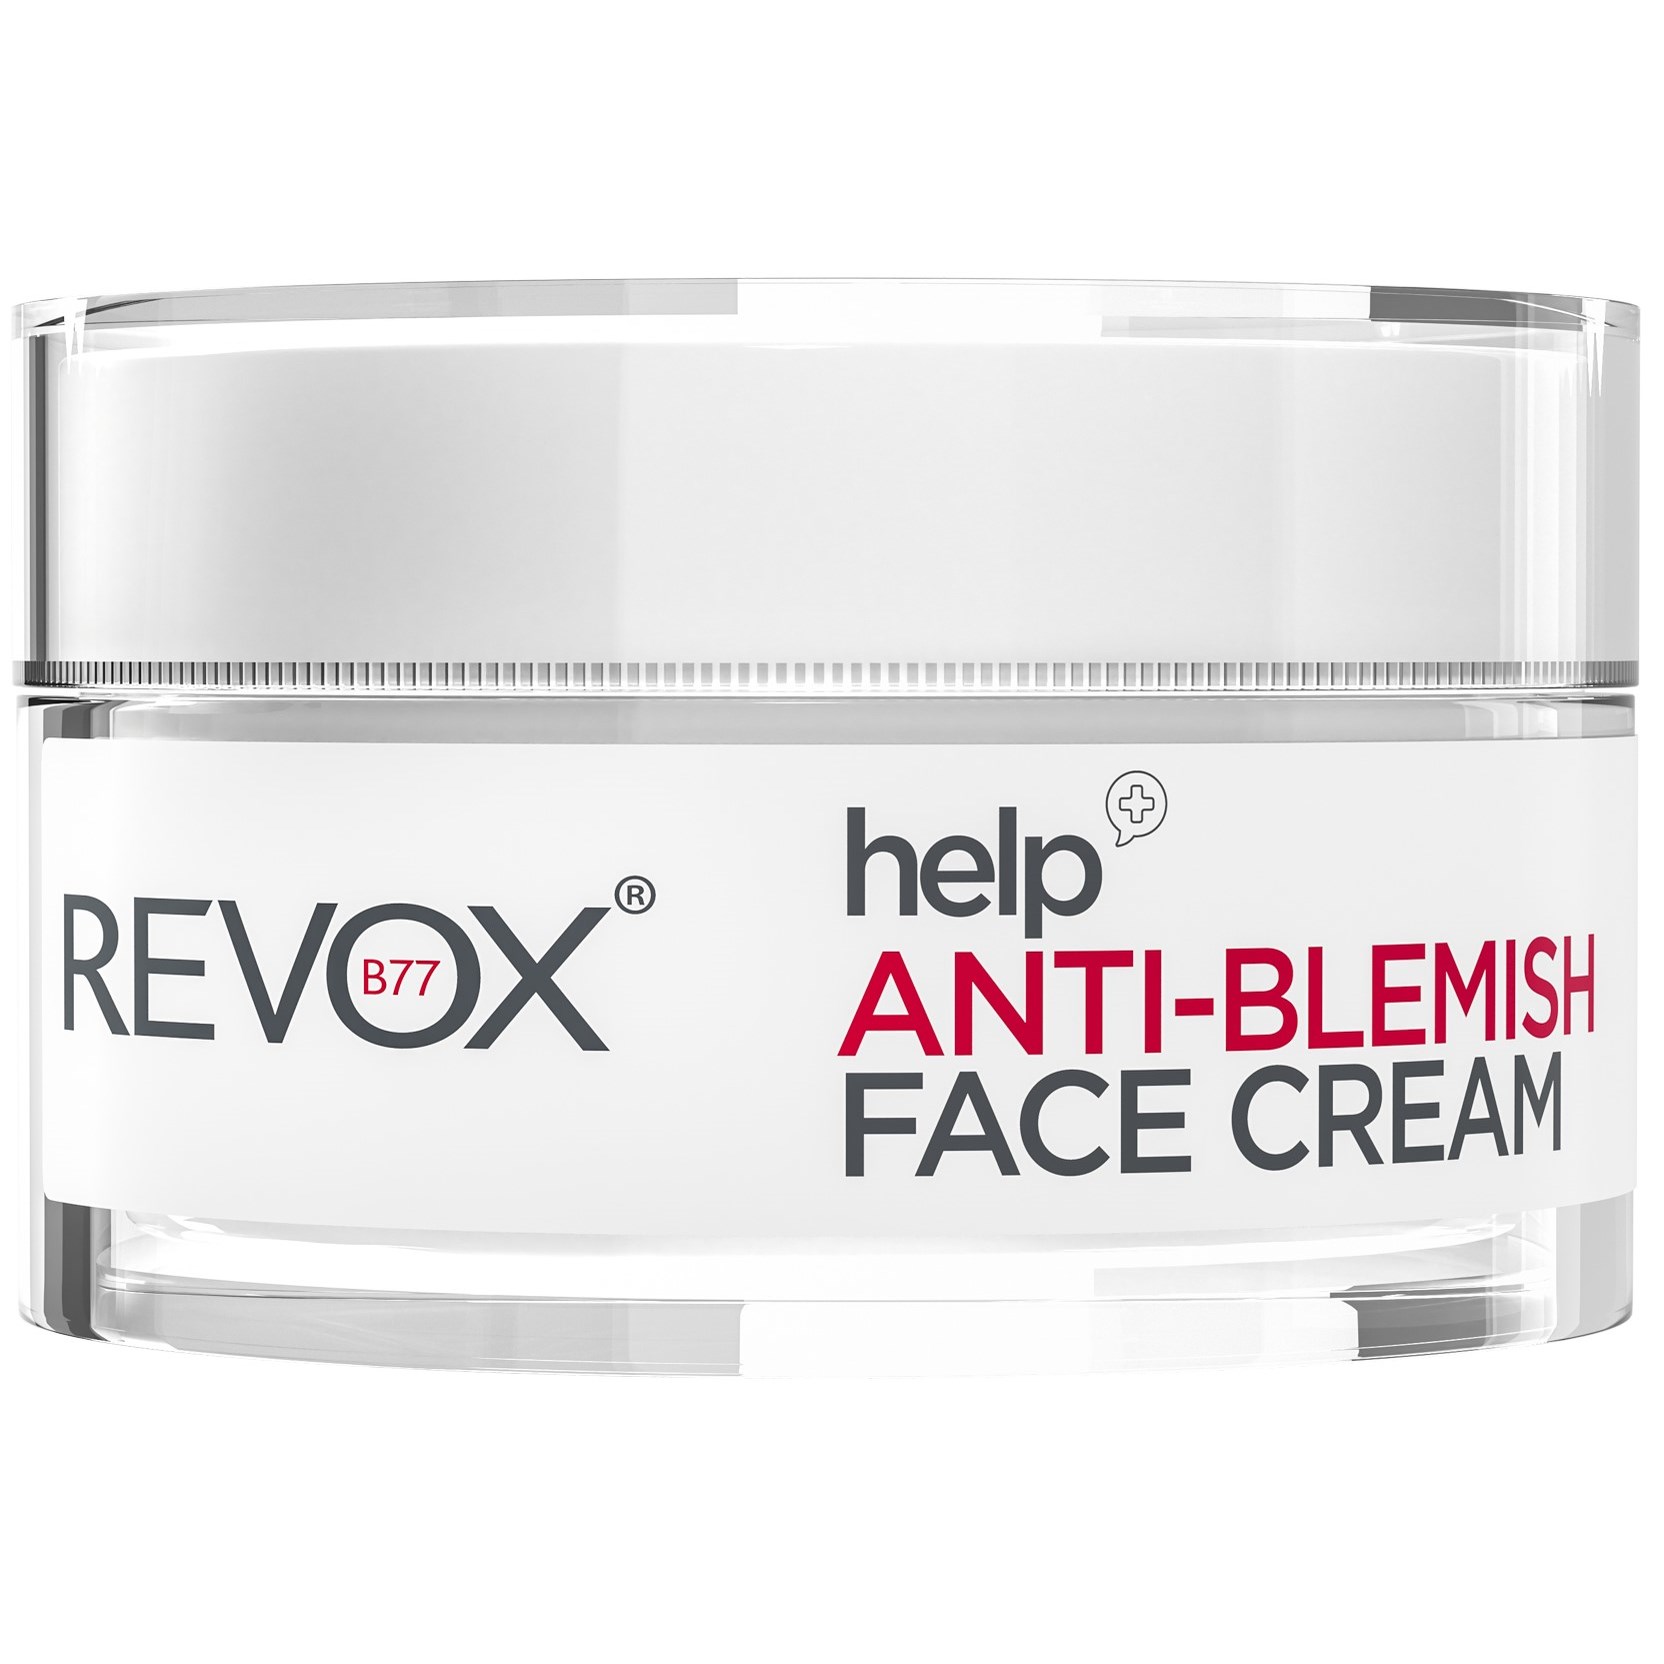 Bilde av Revox Help Anti-blemish Face Cream 50 Ml